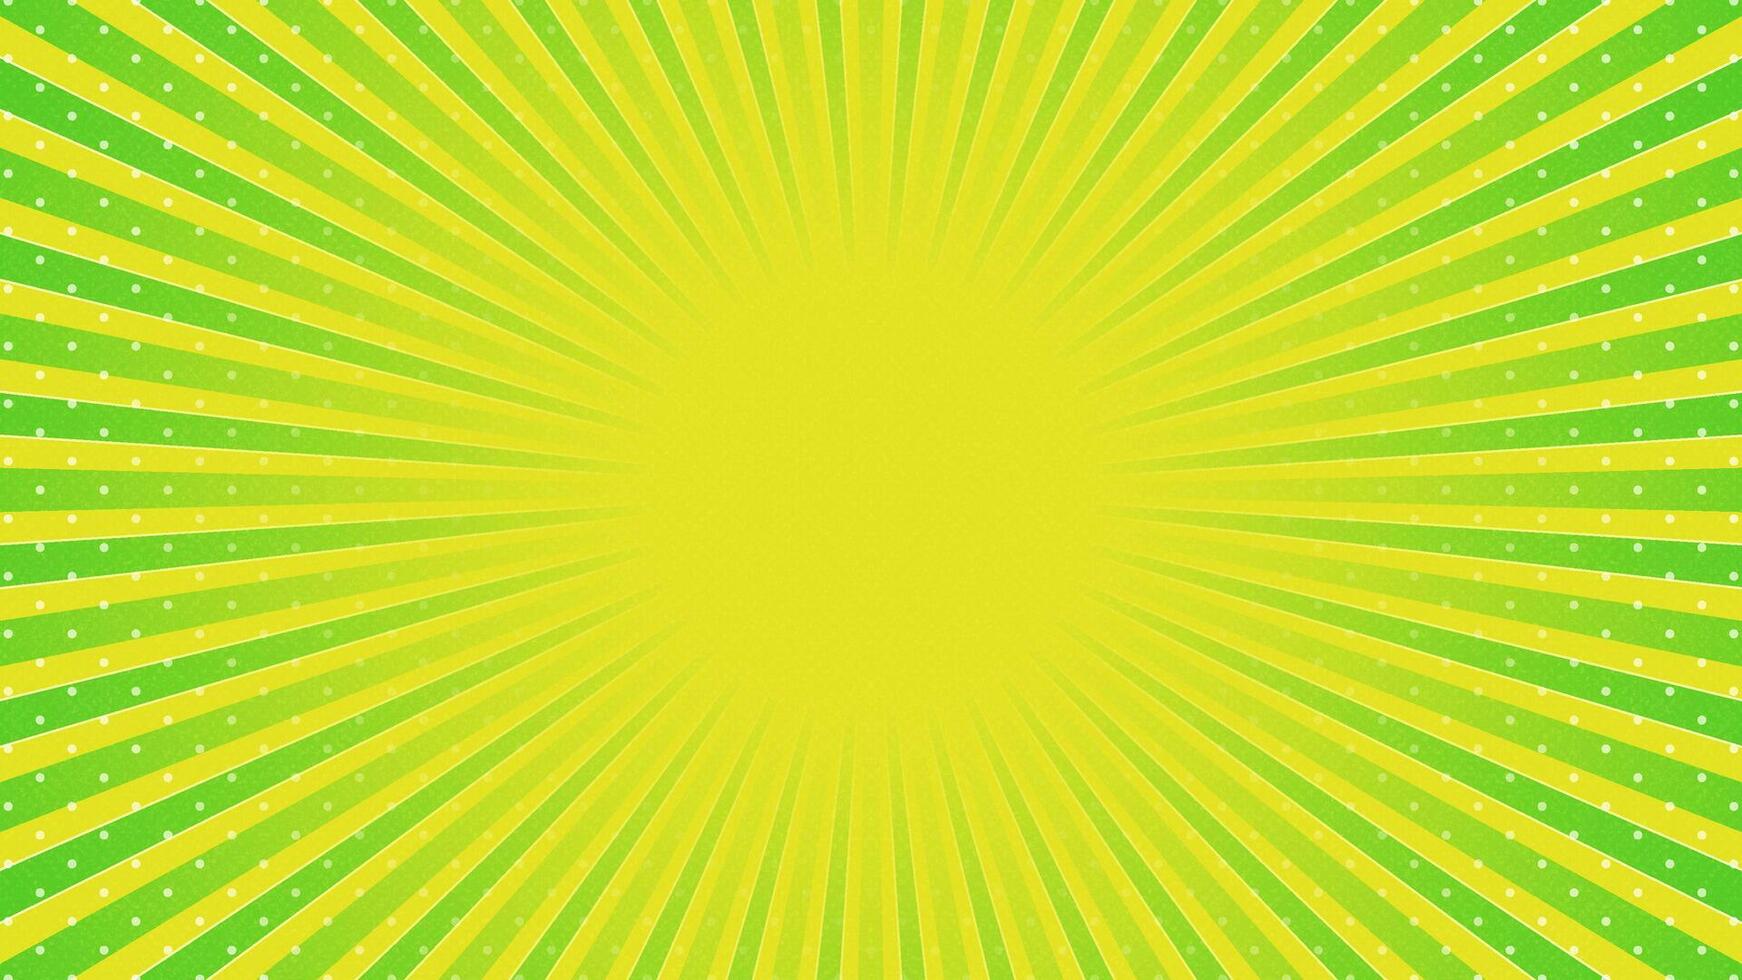 groen met geel zon stralen retro met papier structuur achtergrond. abstract barsten zon stralen patroon ontwerp. vector illustratie.